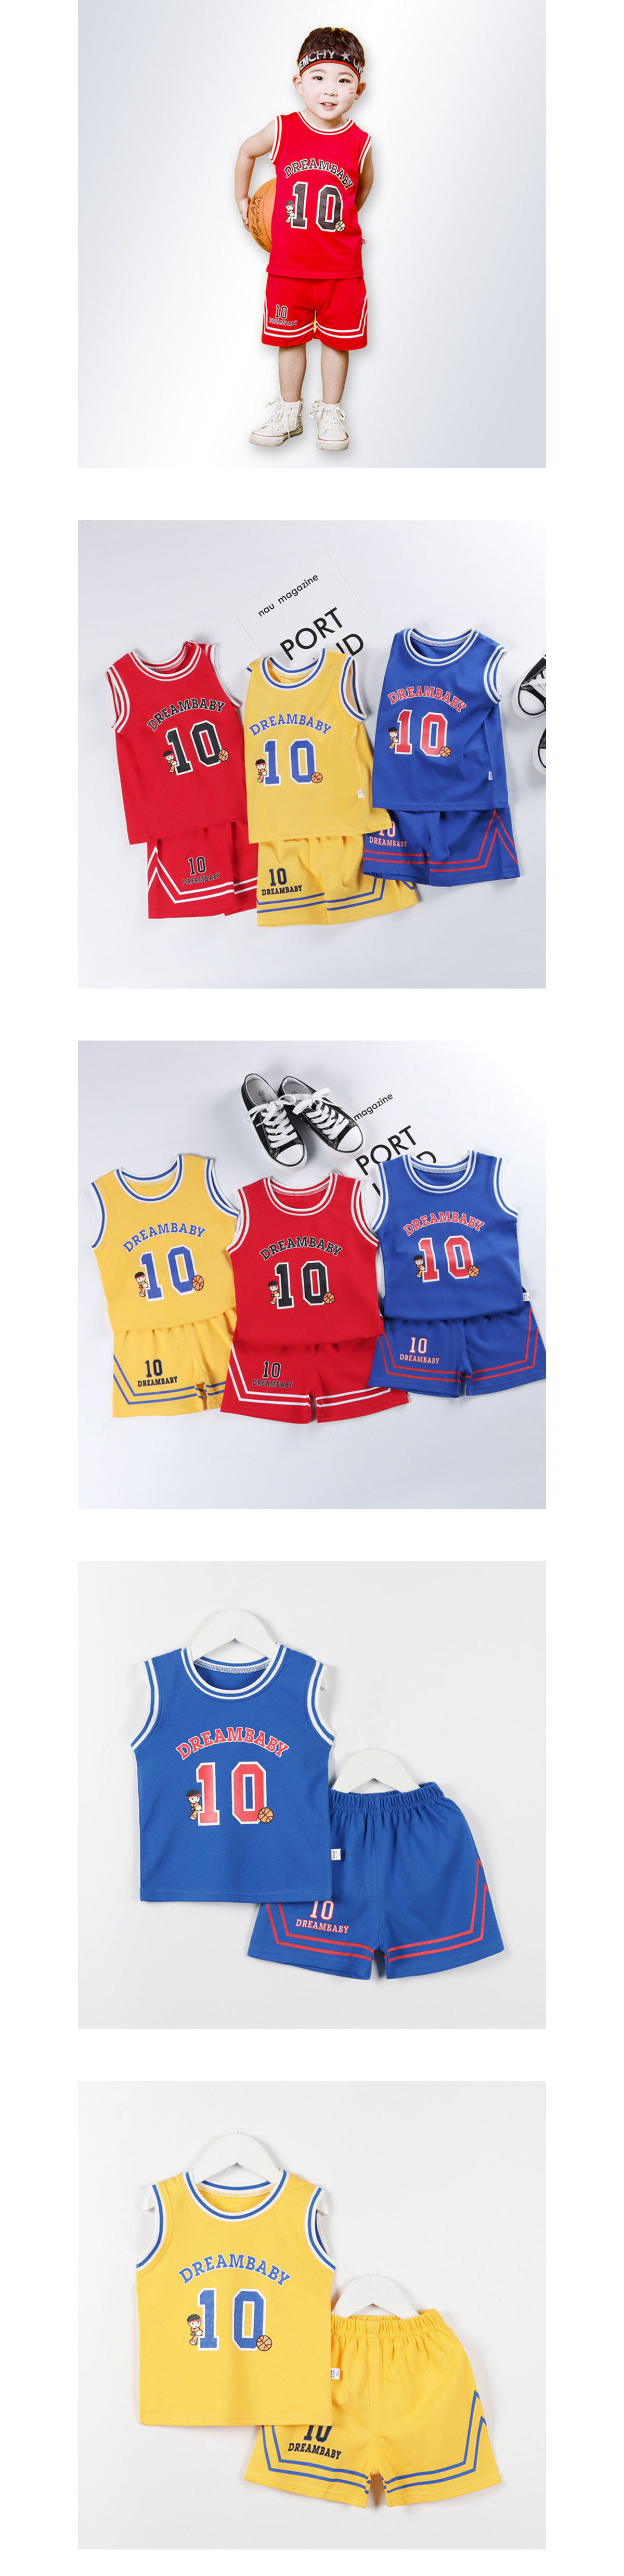 套裝．籃球運動背心兒童球衣兩件組．童裝